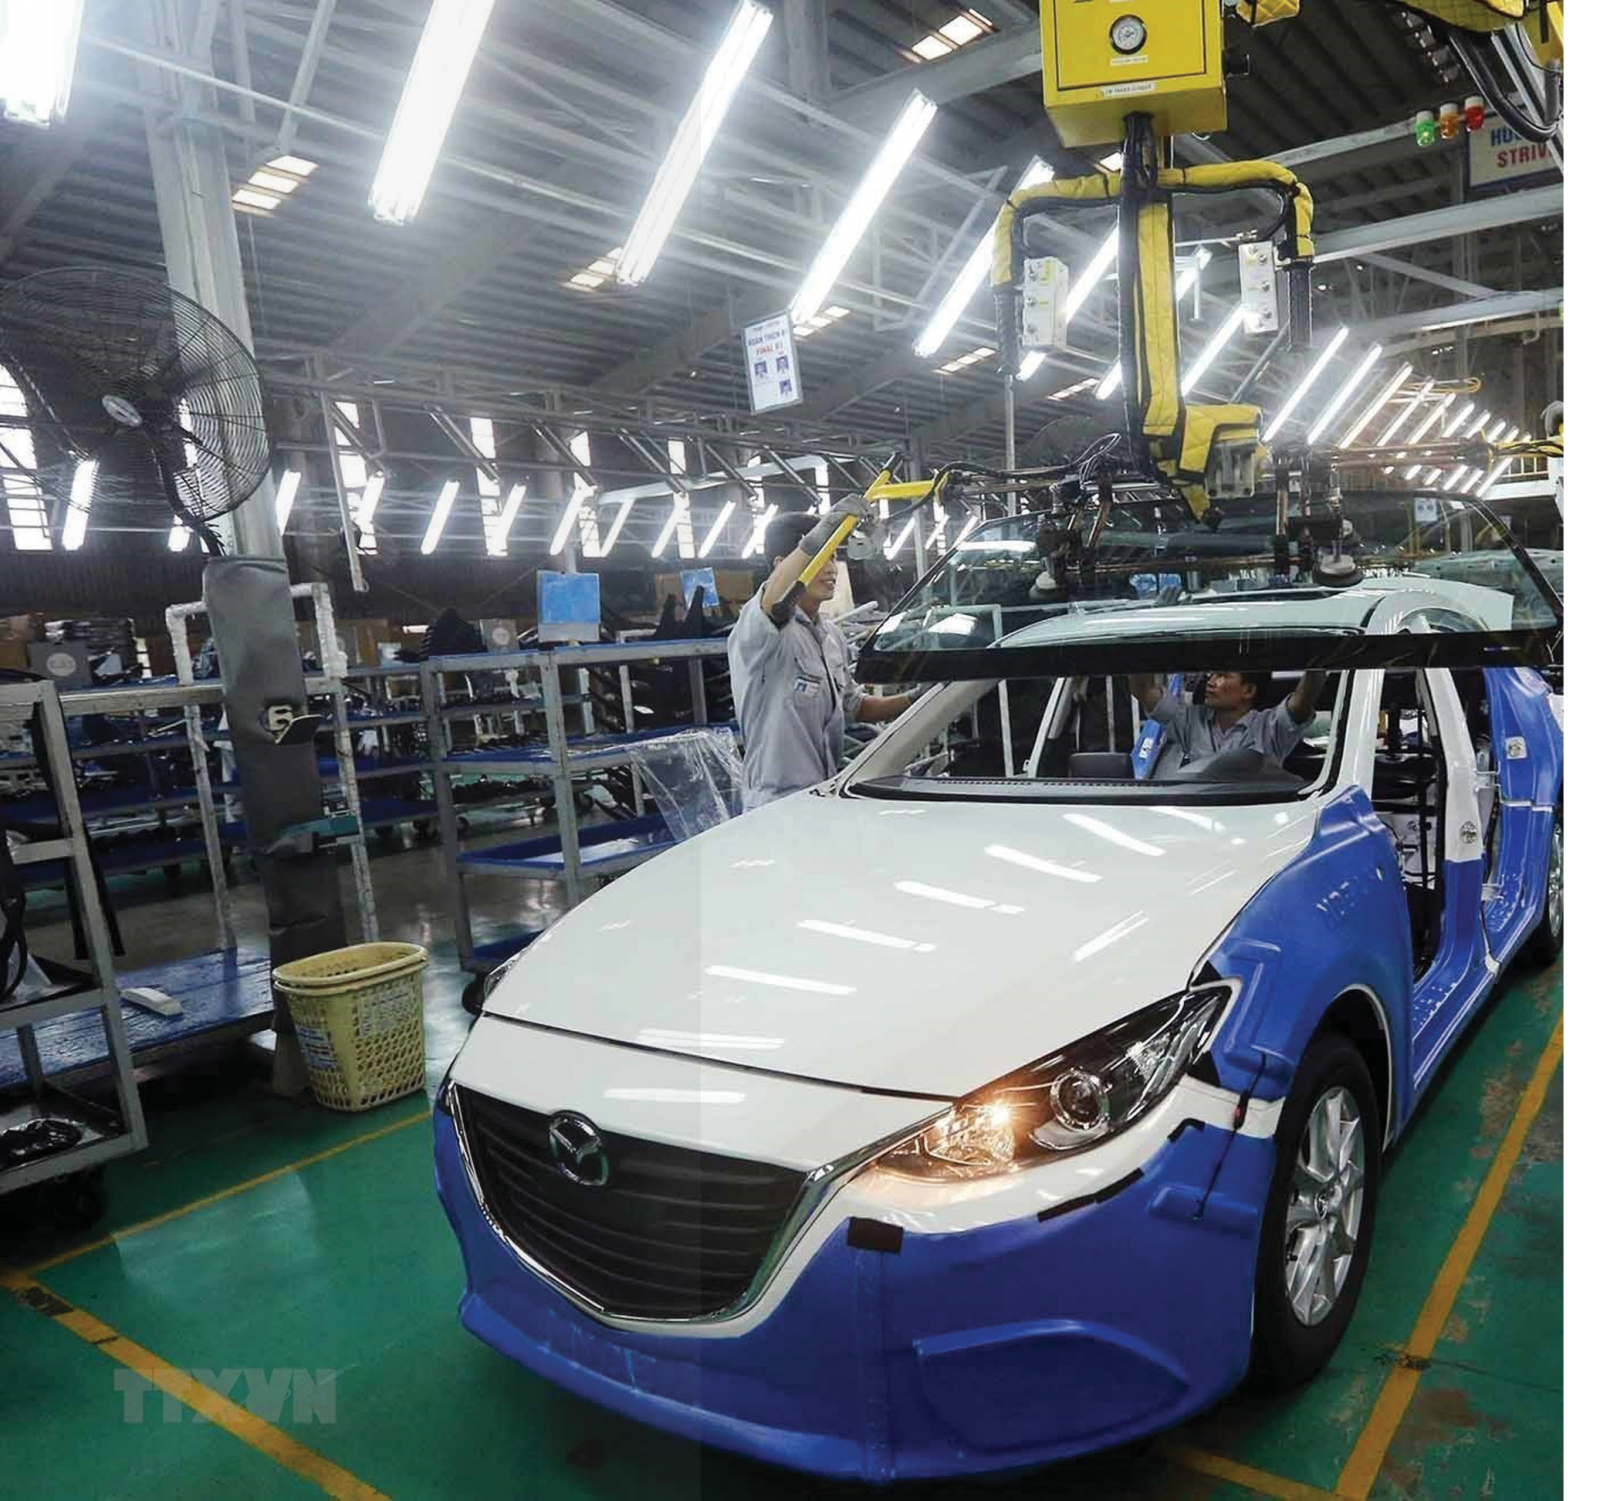 Muốn phát triển ngành công nghiệp ô tô của Việt Nam, thì hàng rào kỹ thuật là rất cần thiết để ngành công nghiệp này không bị cạnh tranh quốc tế bóp chết. (Dây chuyền lắp ráp xe Mazda của Công ty Cổ phần ôtô Trường Hải trong Khu Kinh tế mở Chu Lai, Quảng Nam - Ảnh: Danh Lam)